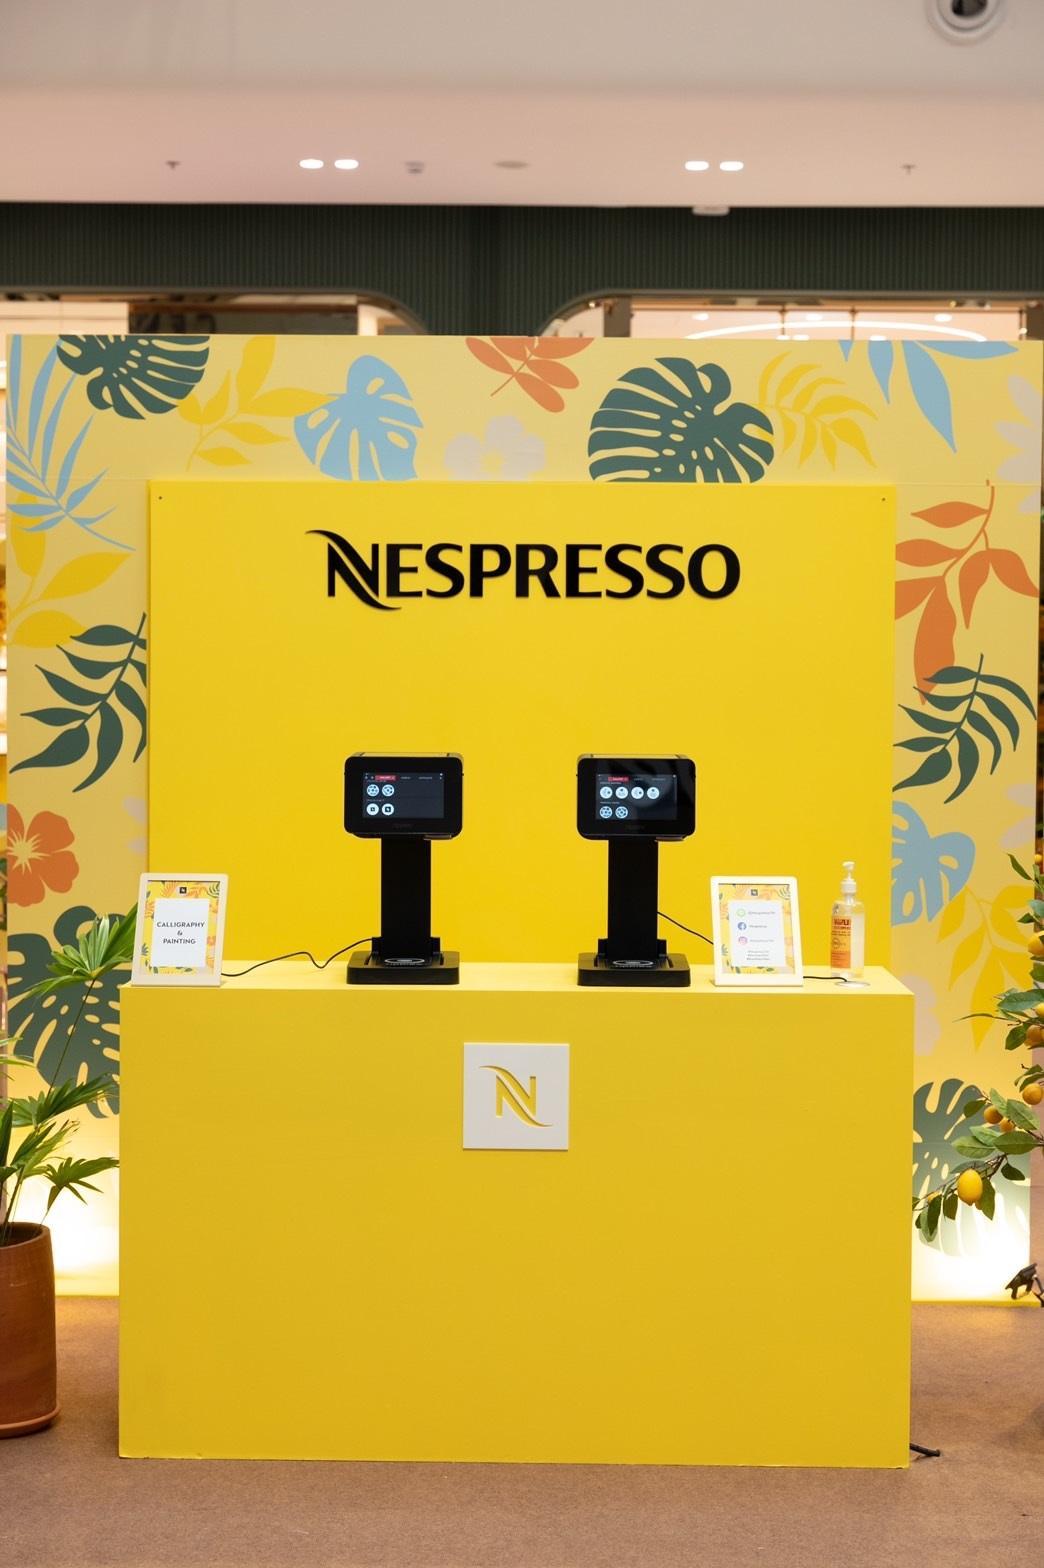 5. Nespresso